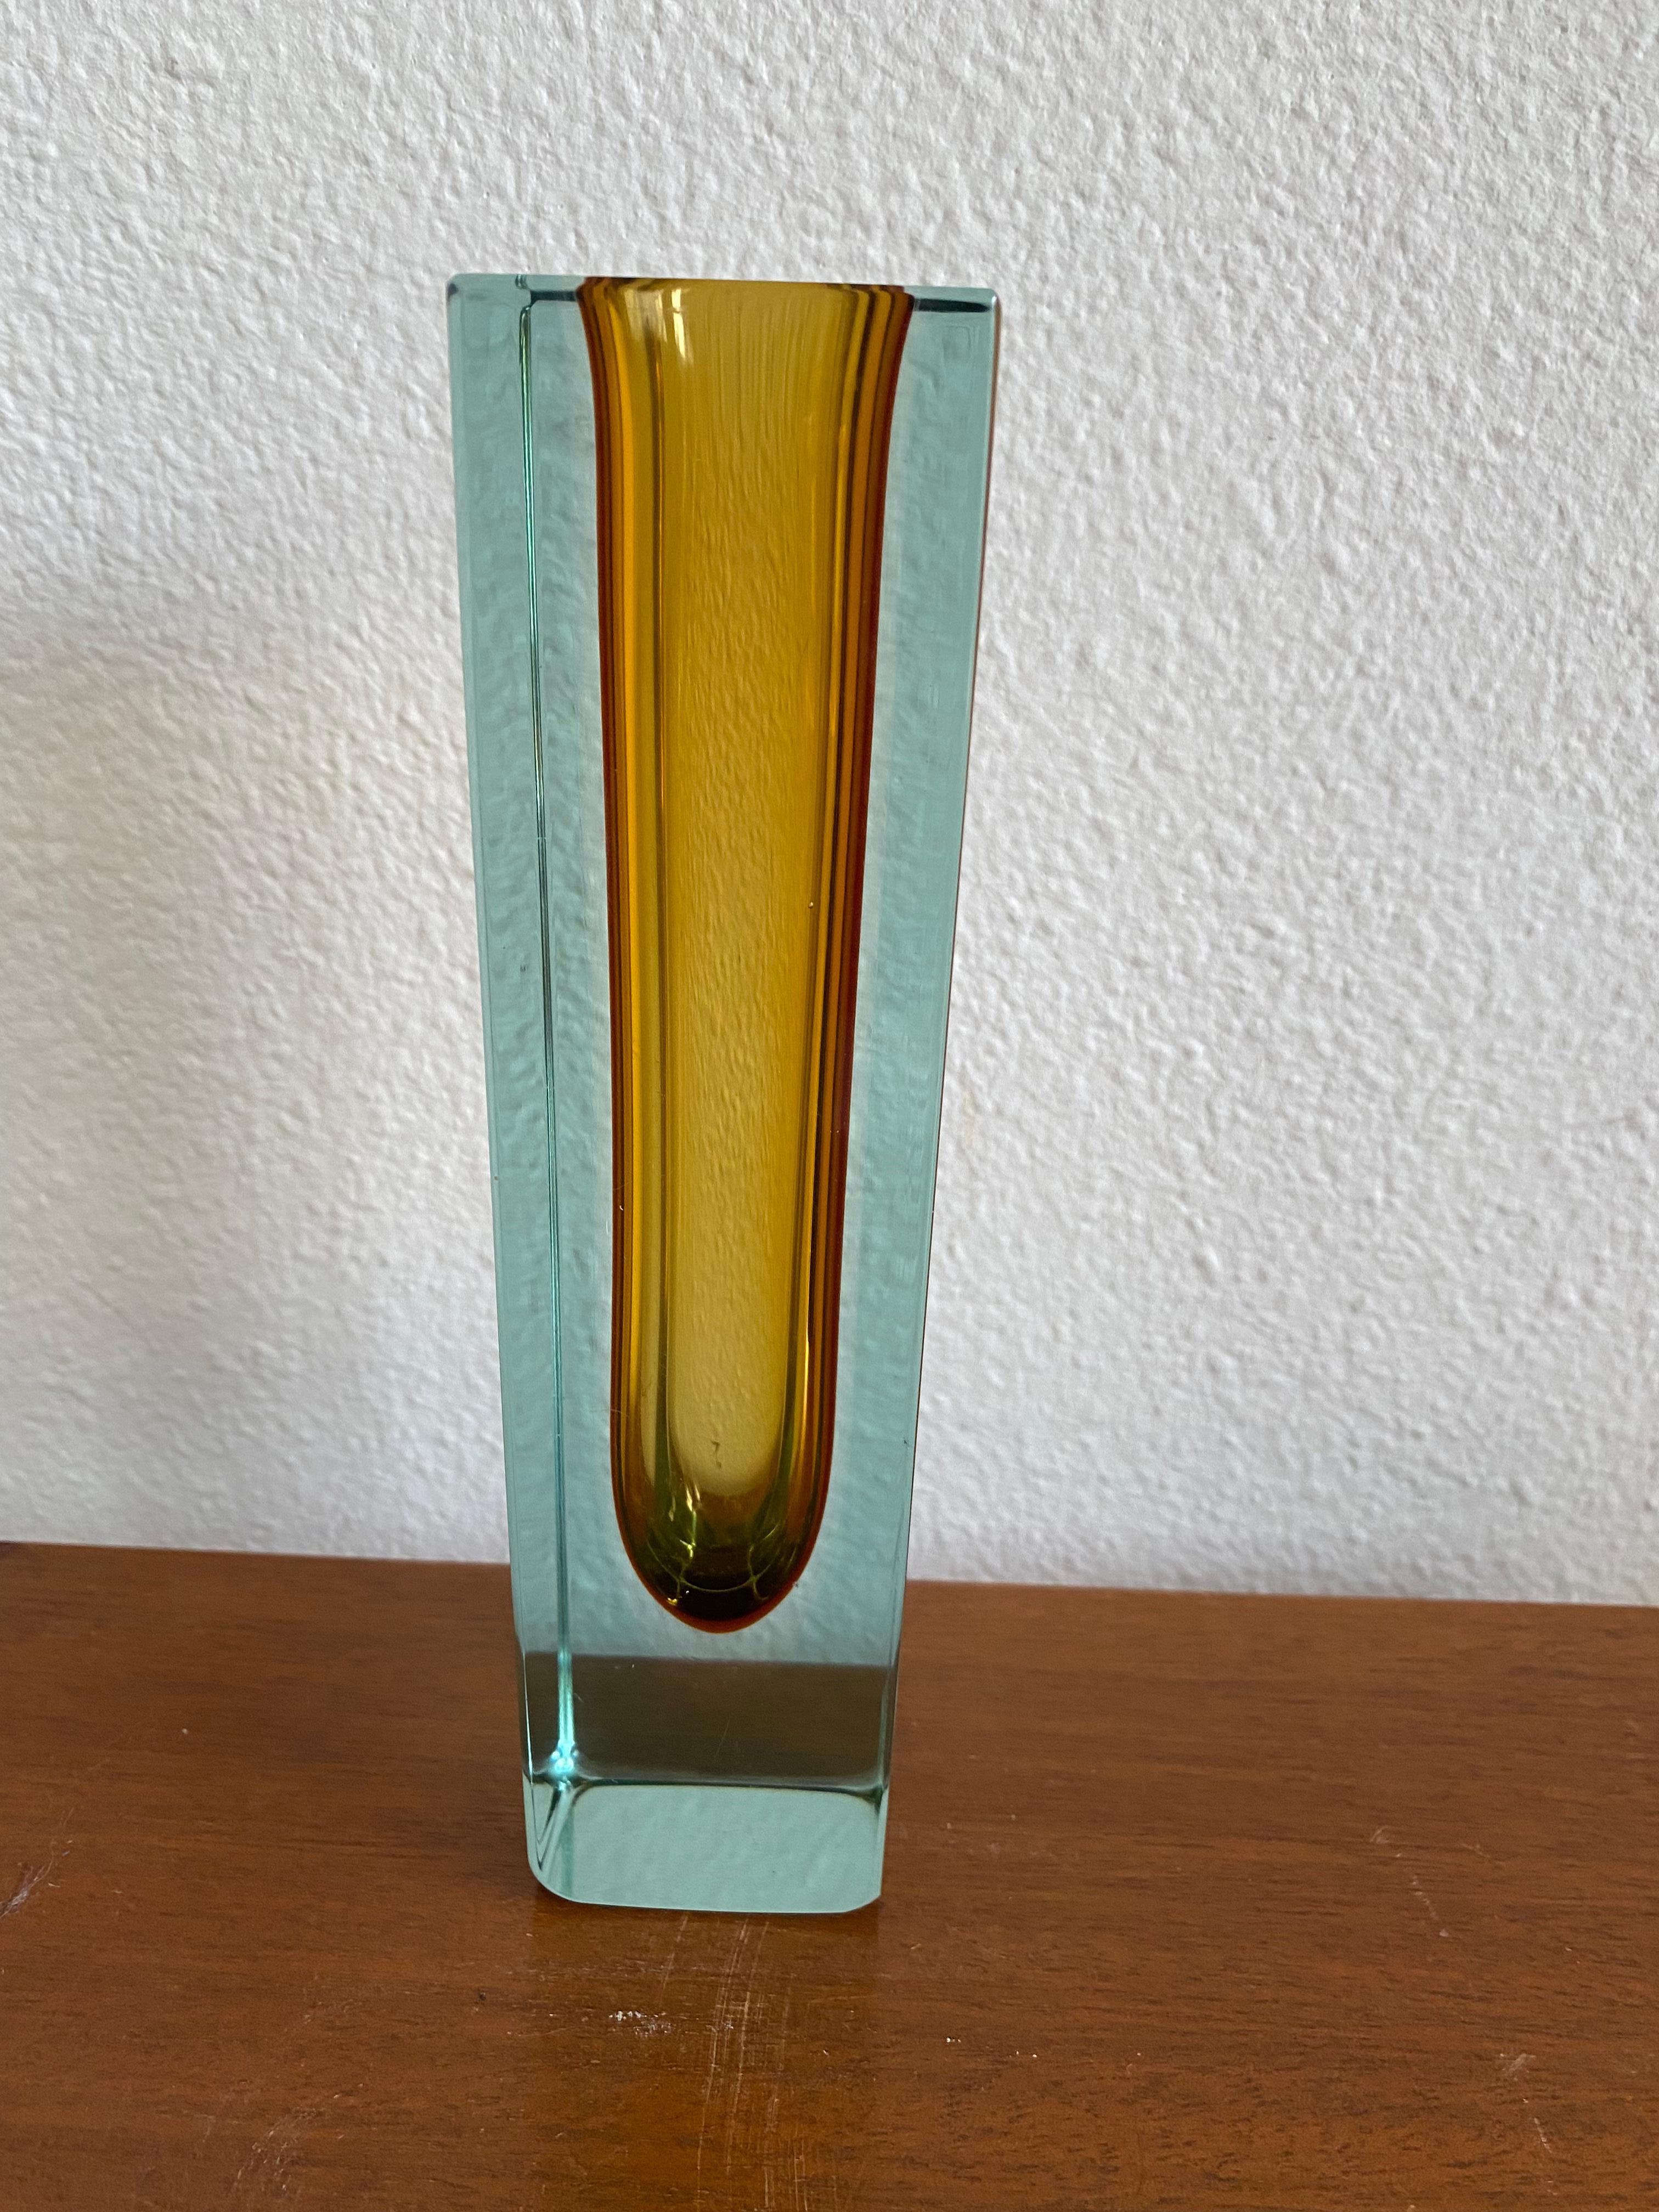 Magnifique vase en verre de Murano de couleur vert/bleu avec pêche, datant du milieu du siècle dernier. Réalisé selon la technique du verre Sommerso (immergé).